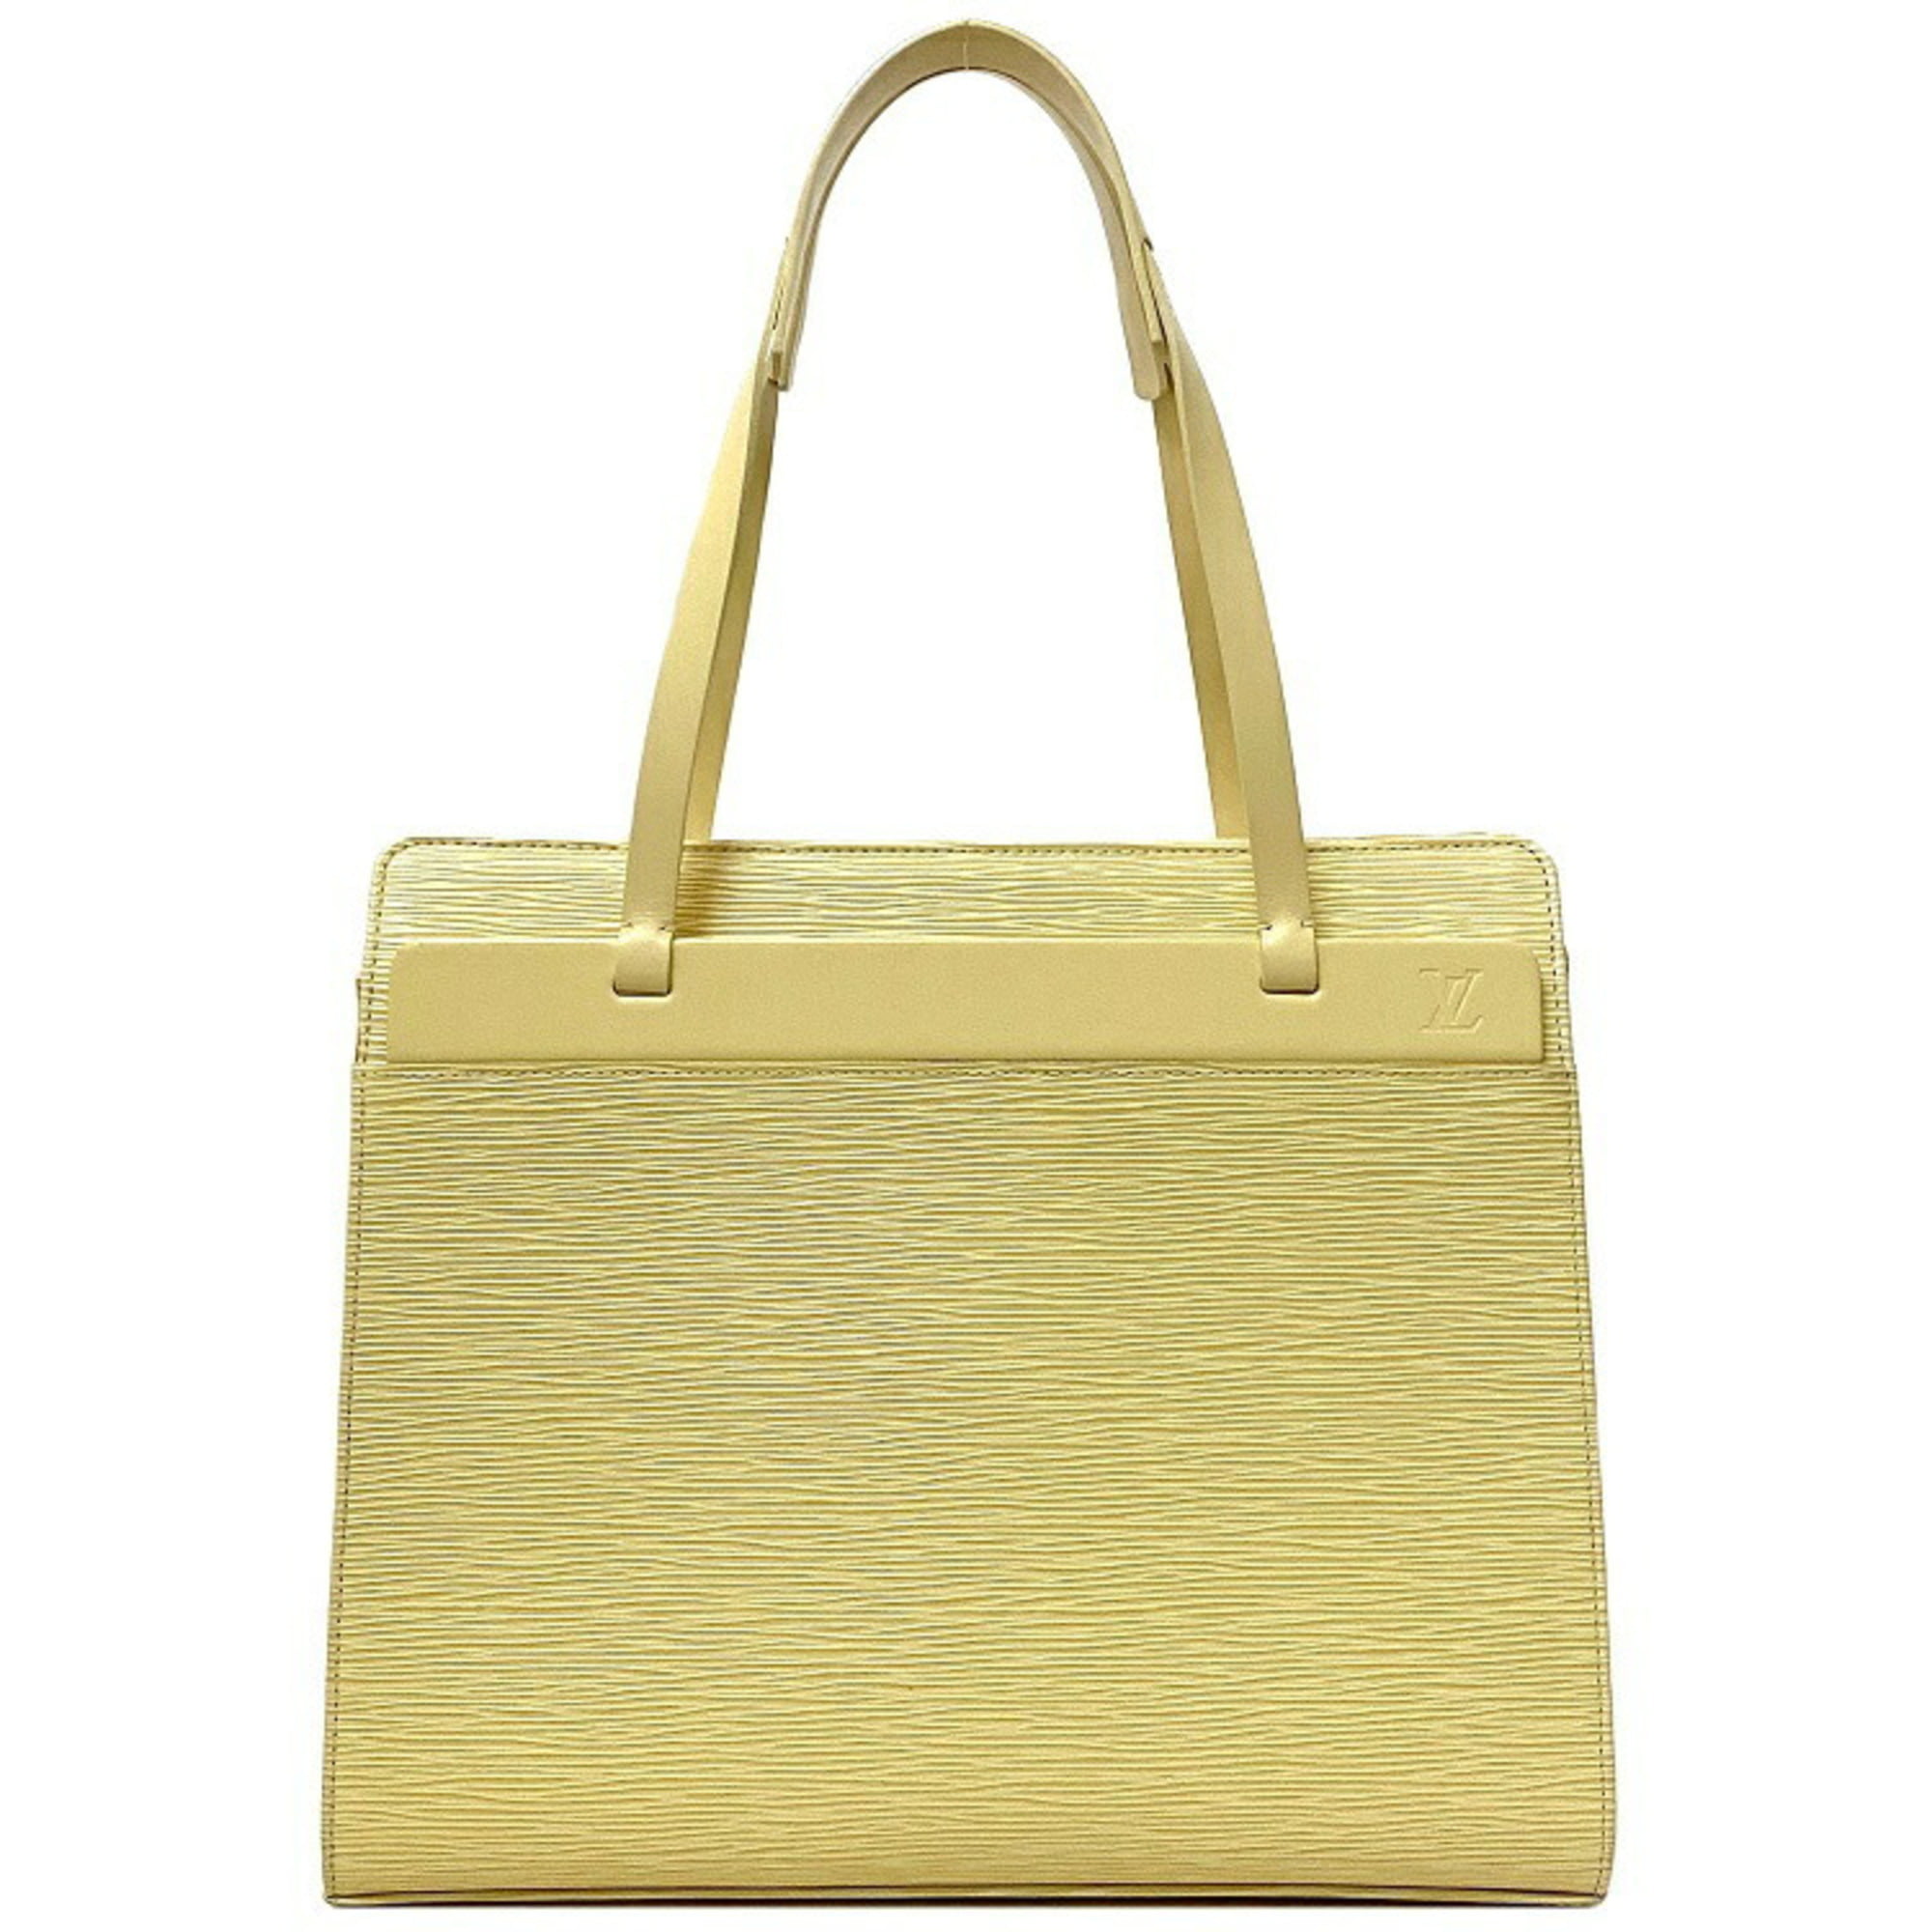 Louis Vuitton - Authenticated Croisette Handbag - Cloth Beige for Women, Good Condition